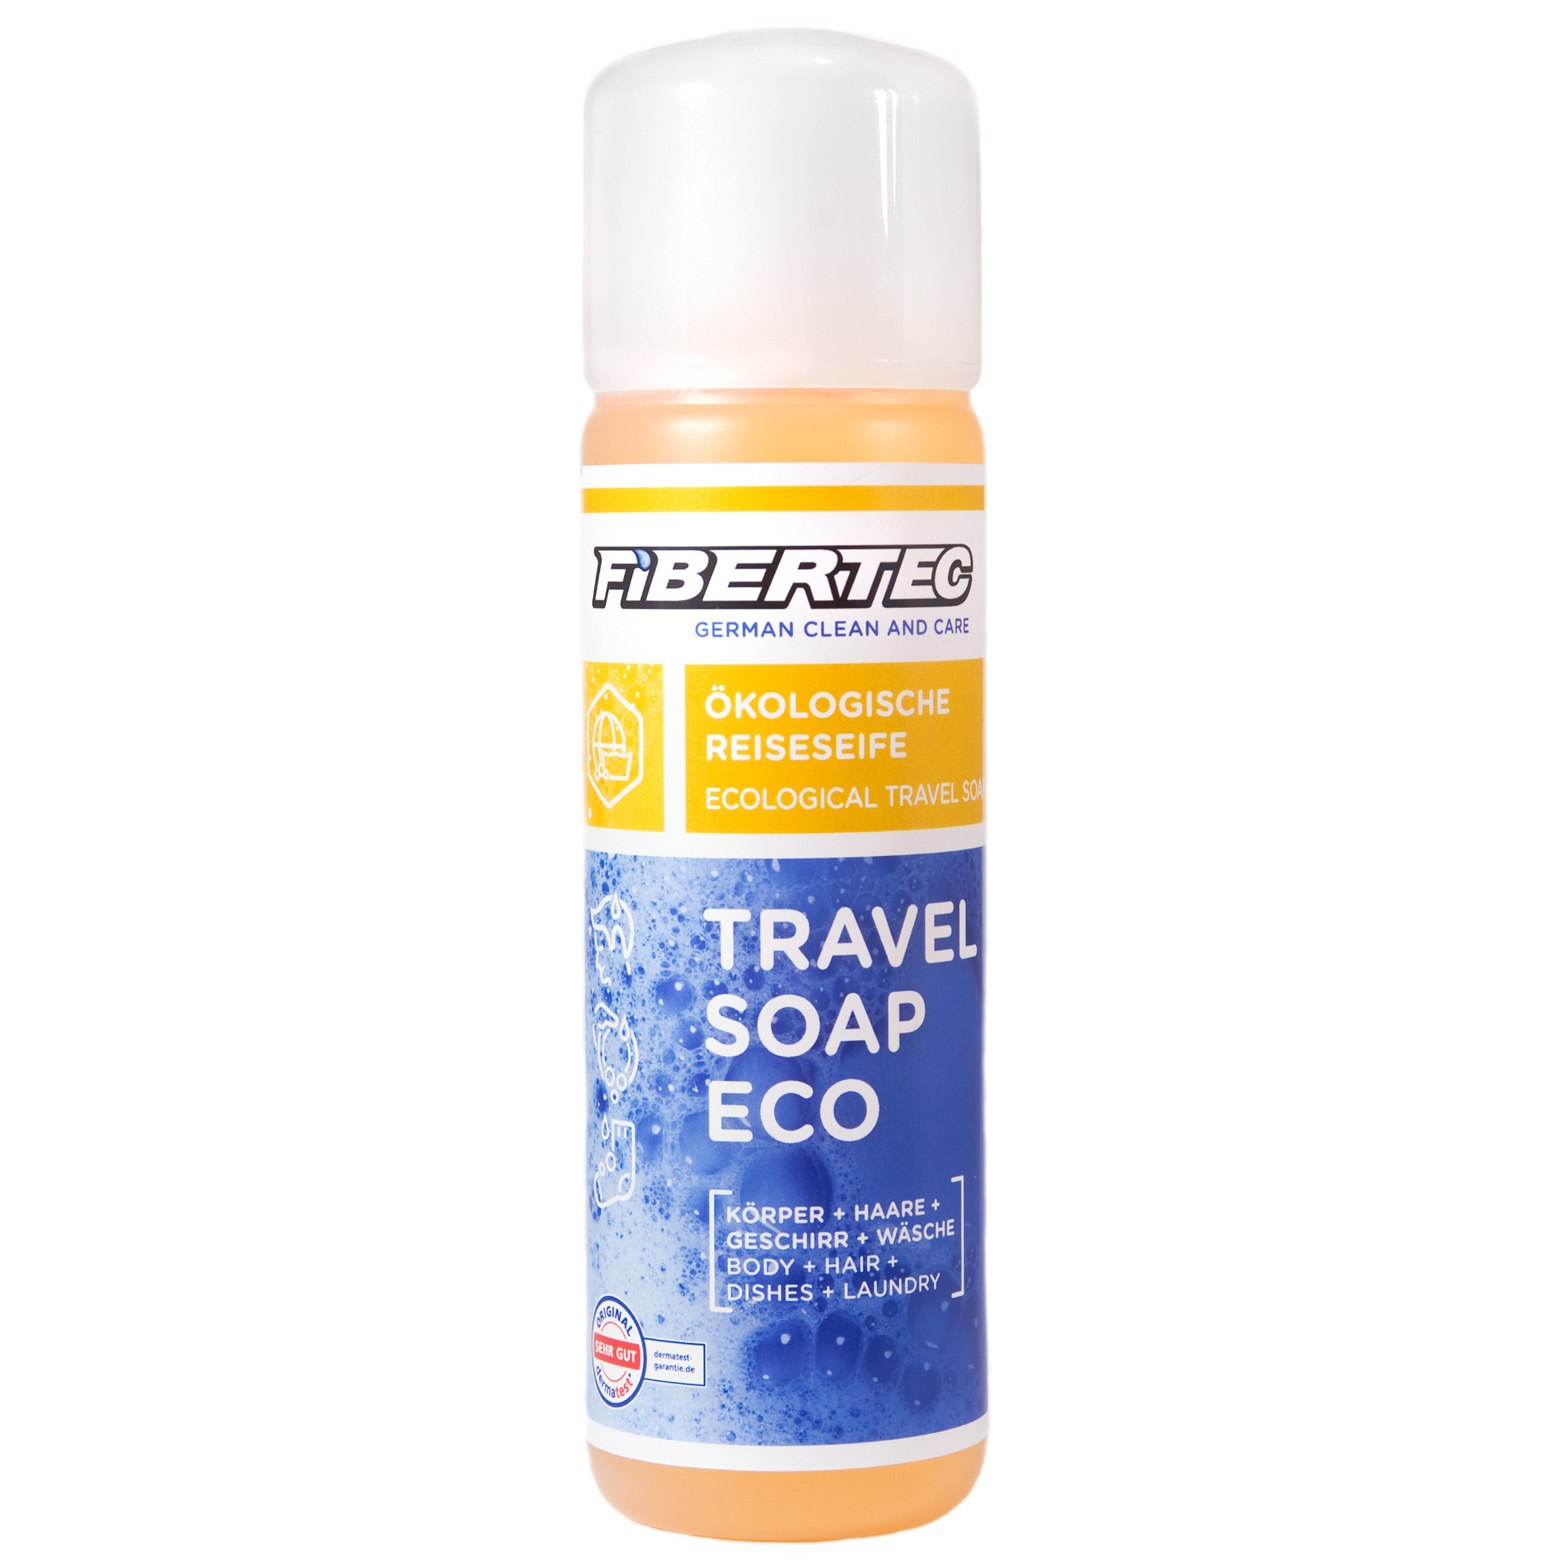 Productfoto van Fibertec Travel Soap Eco - 250ml